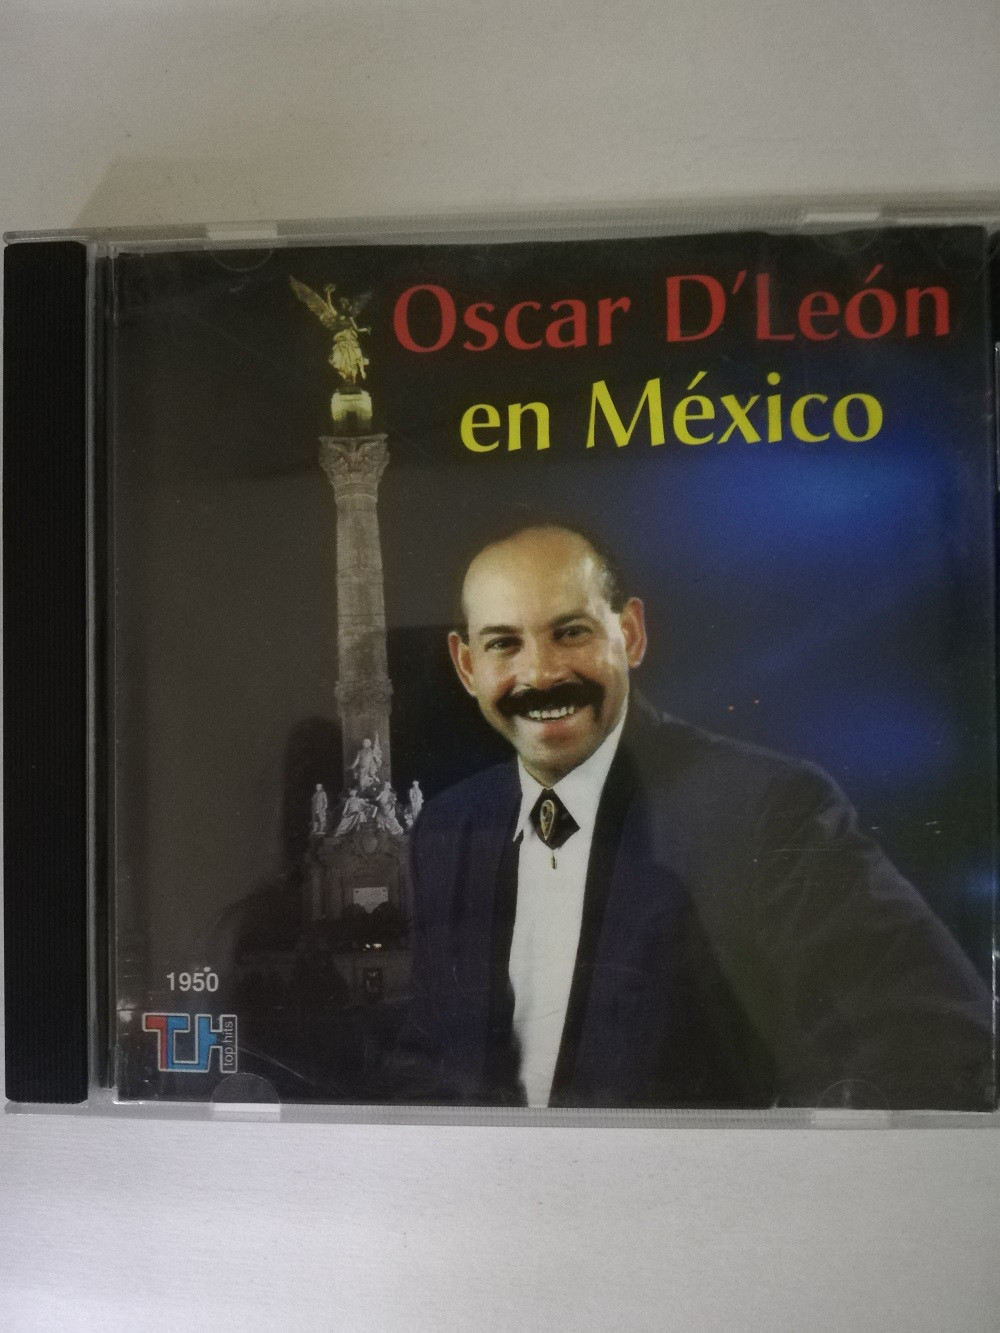 Imagen CD OSCAR DE LEÓN - EN MÉXICO 1